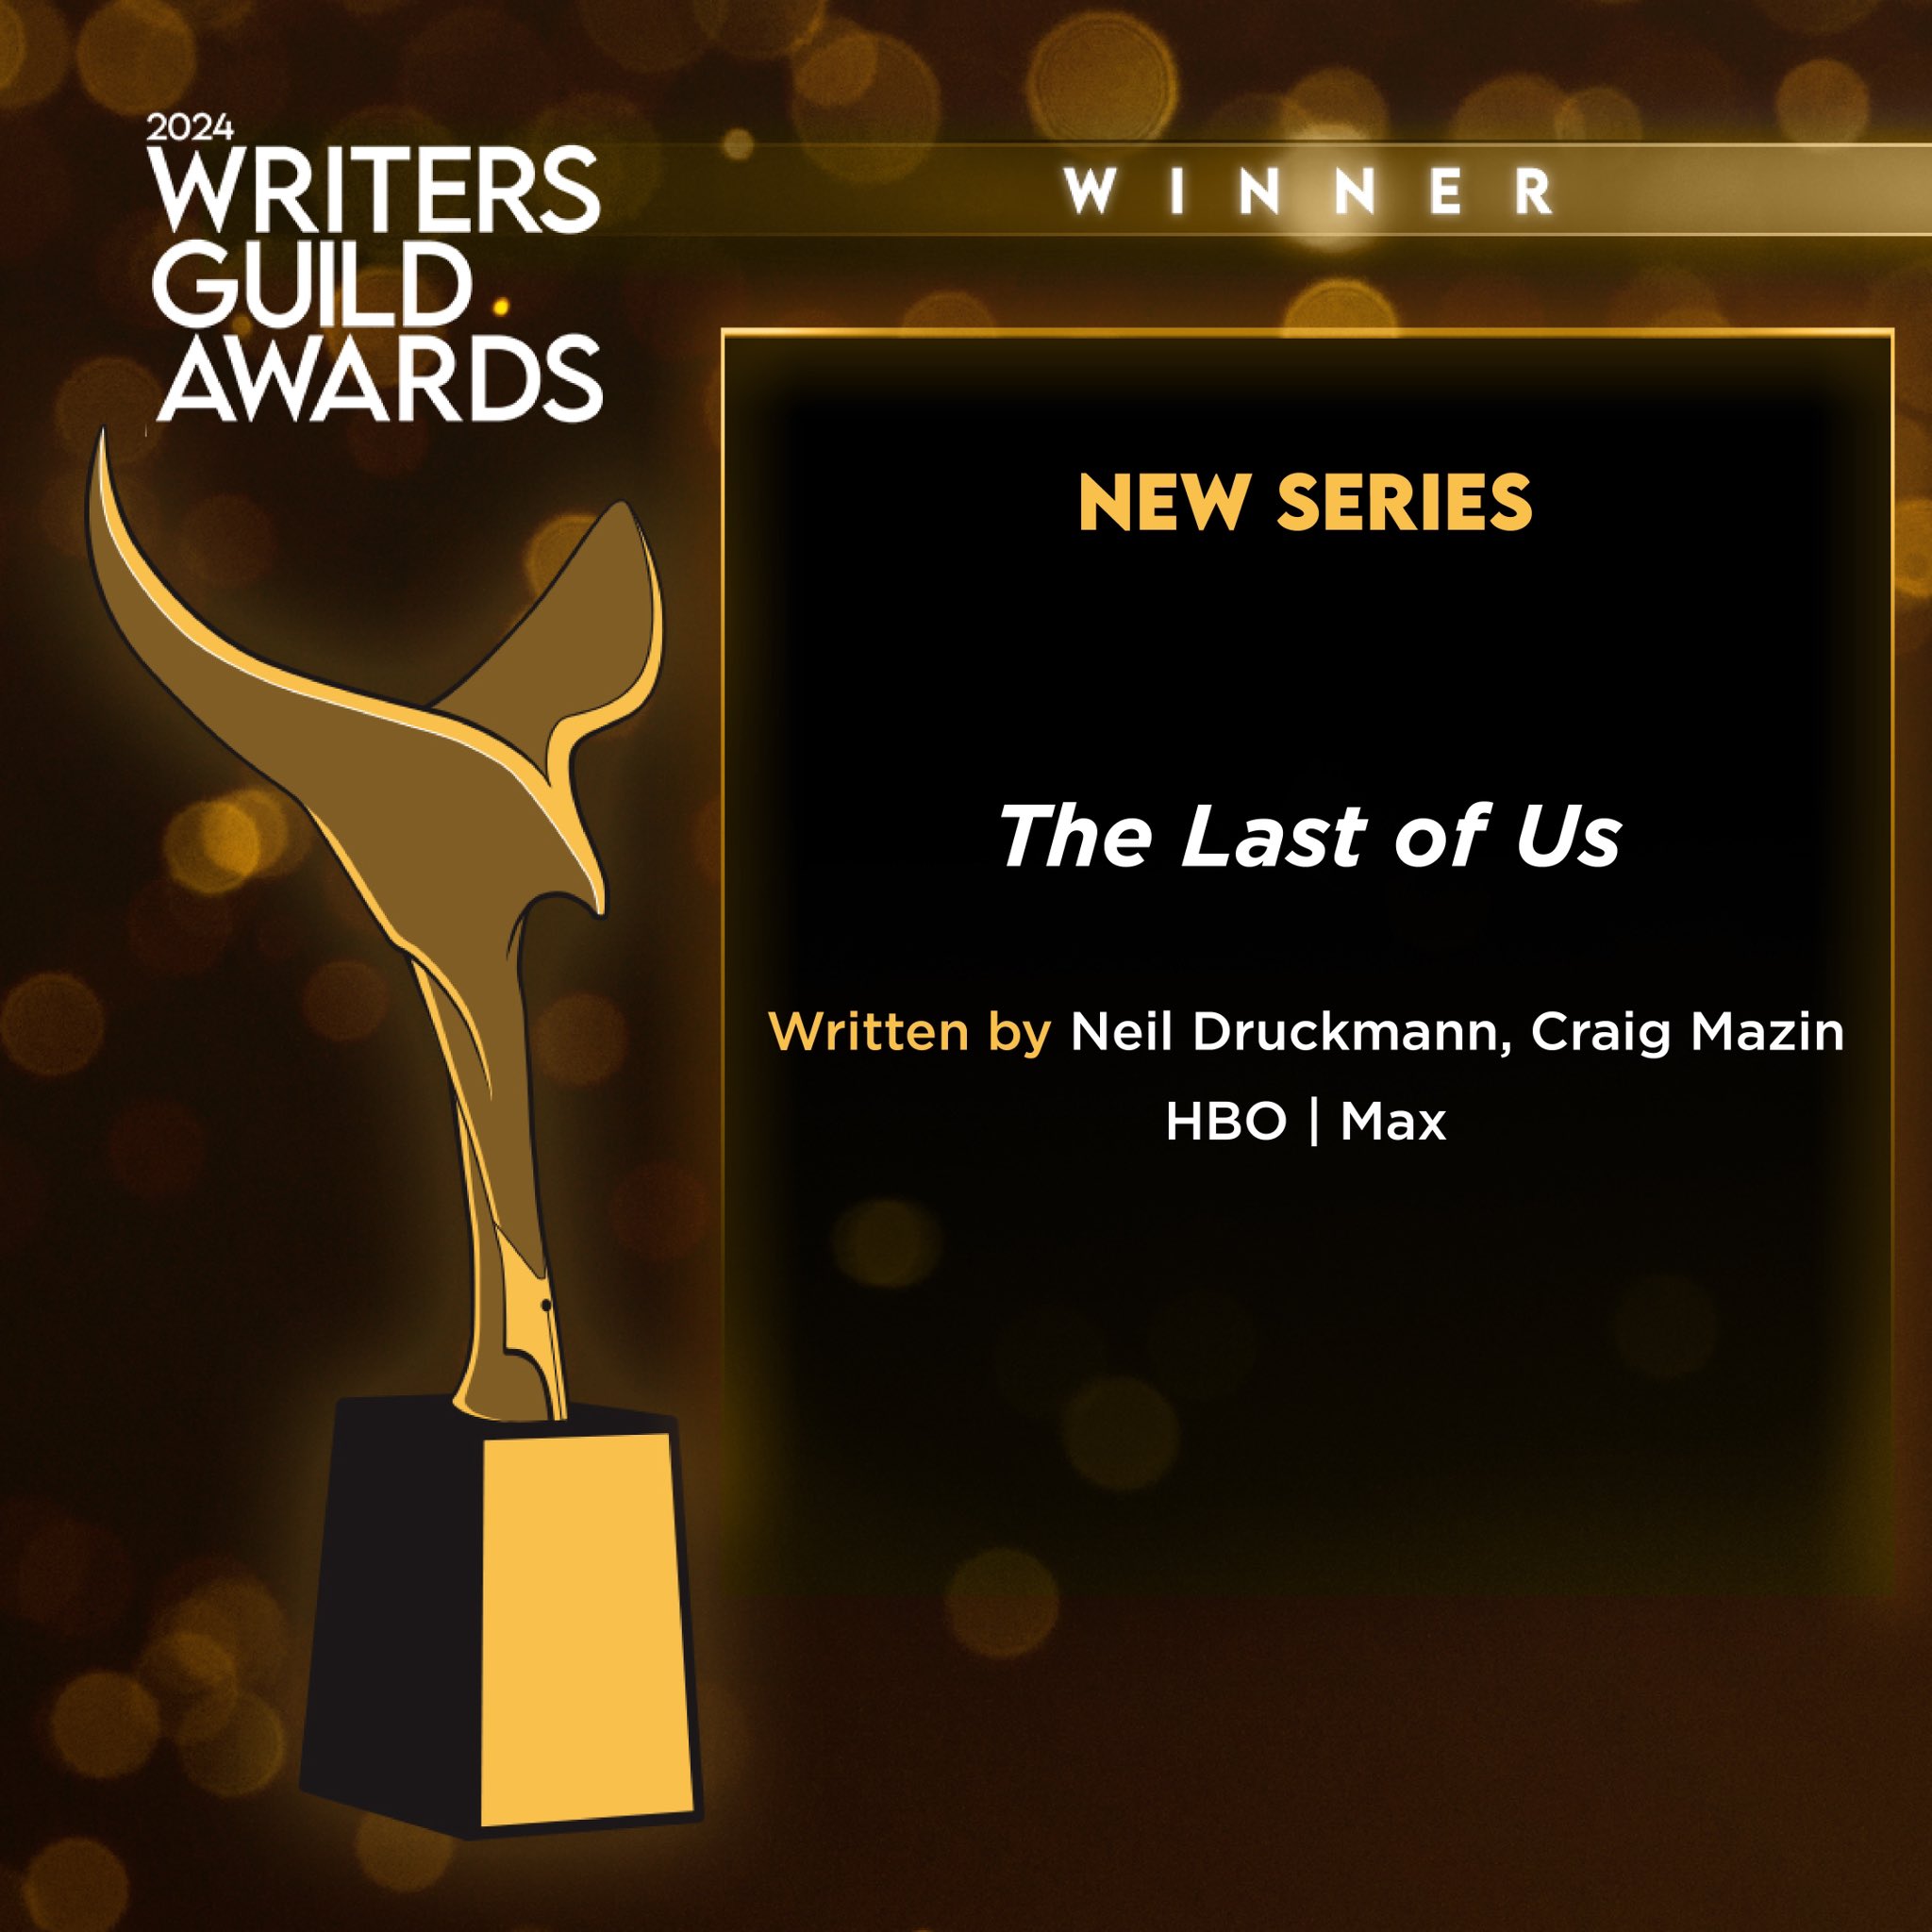 《最后的生还者》剧集再获奖项�
：2024年美国作家协会奖最佳新剧编剧奖